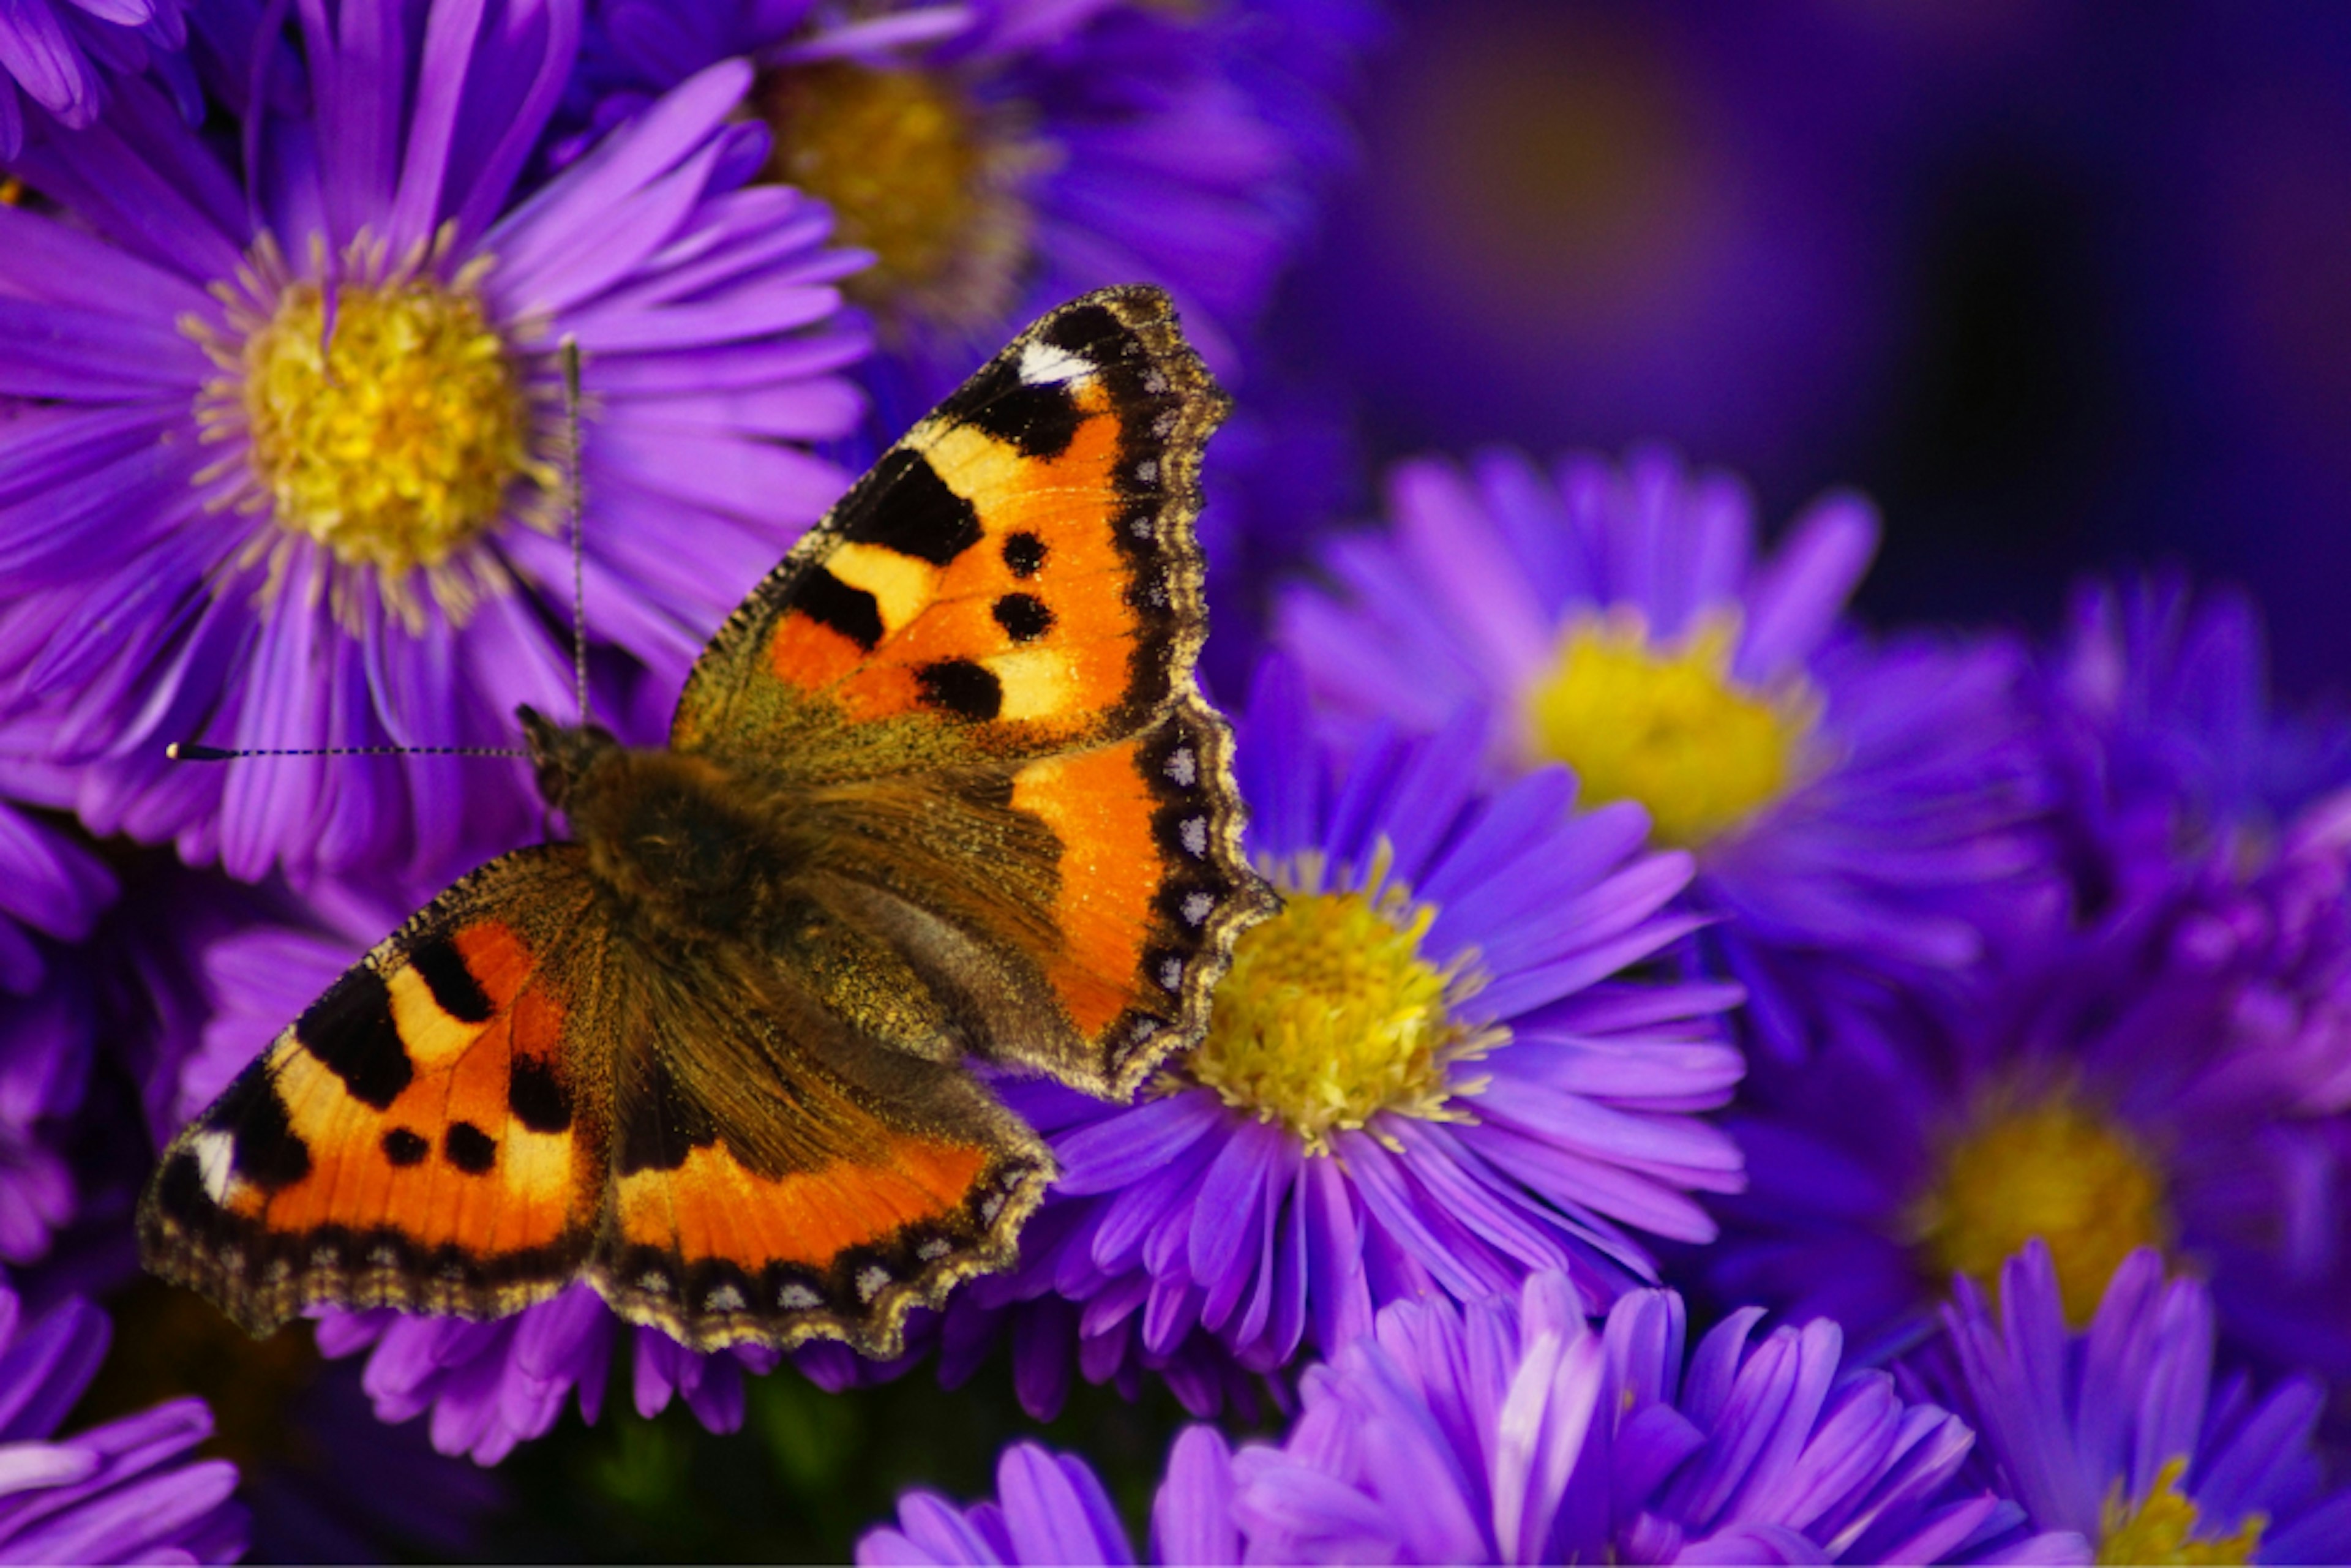 Purple flowers with orange butterfly.